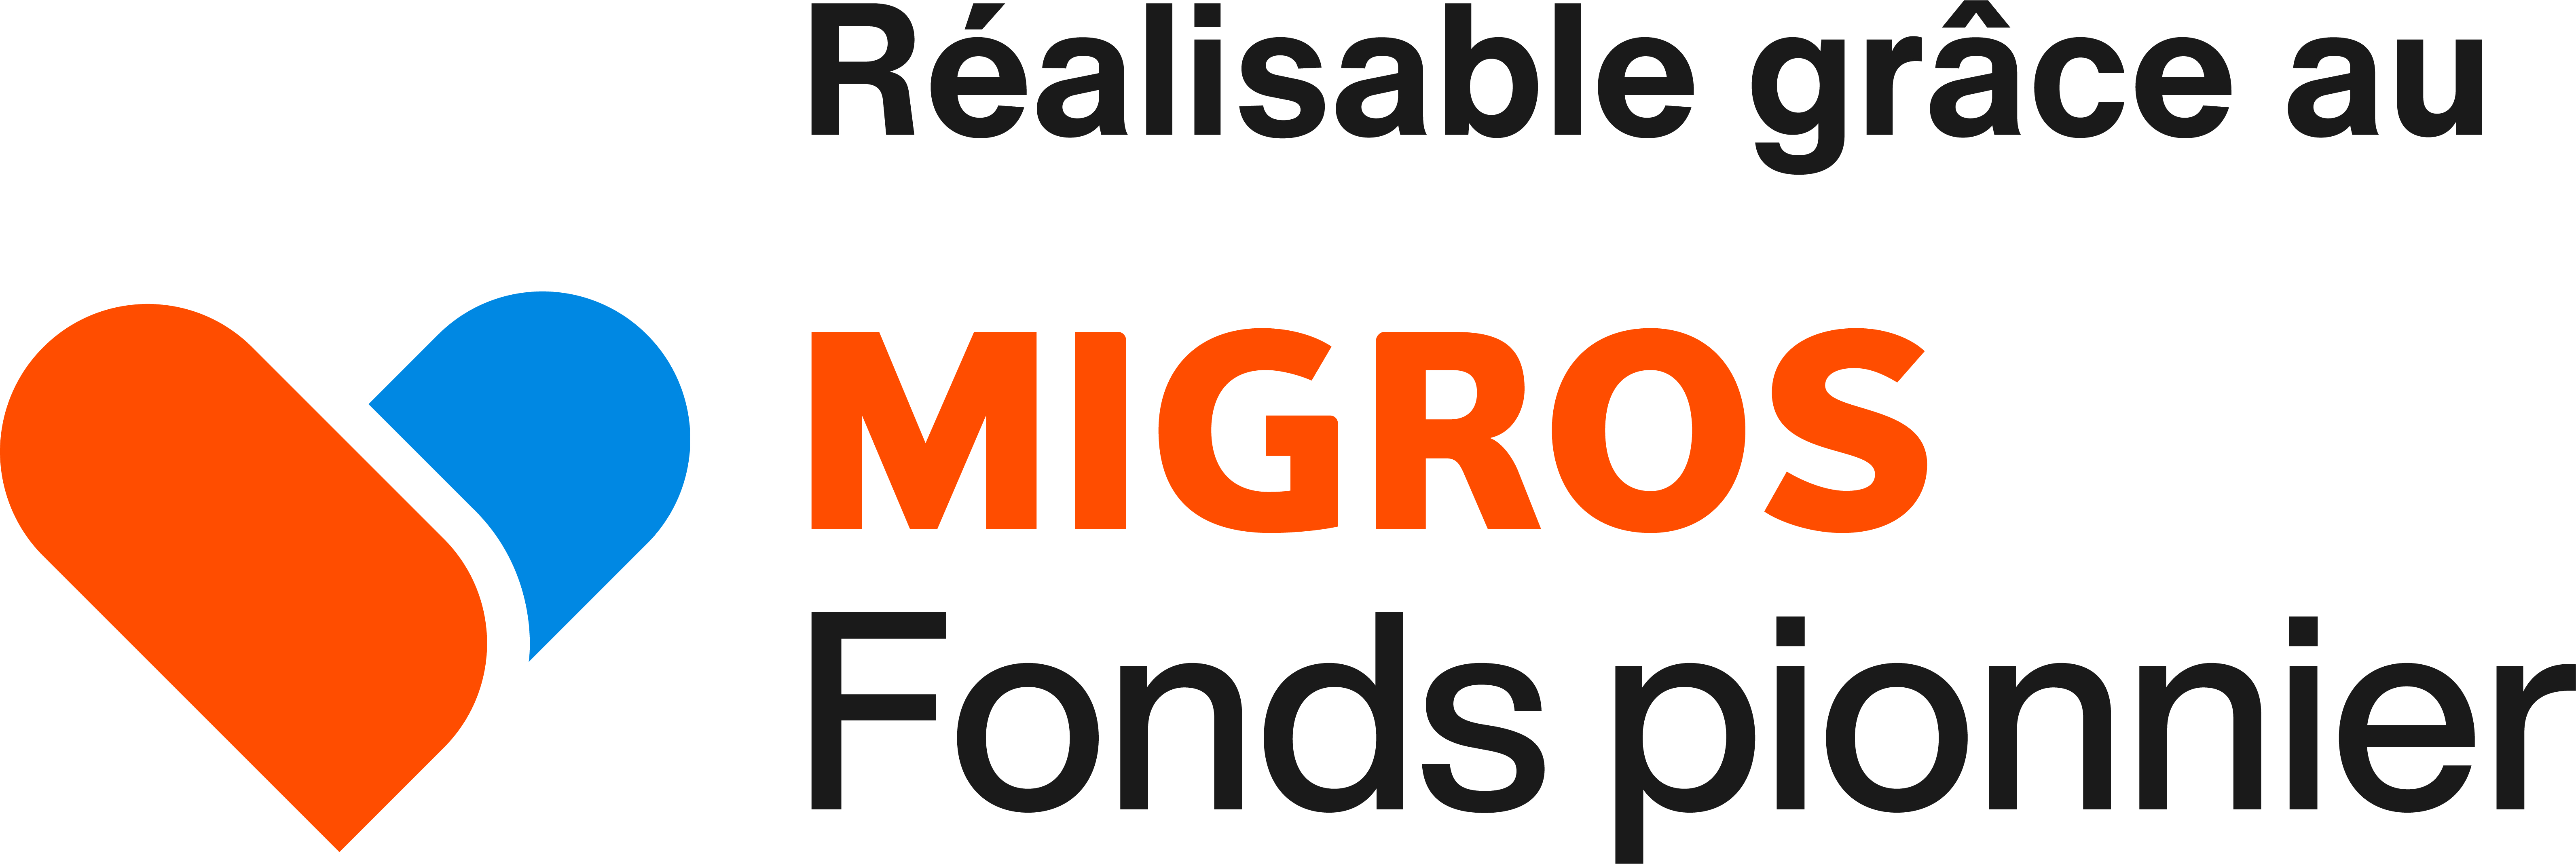 Fonds pionnier Migros